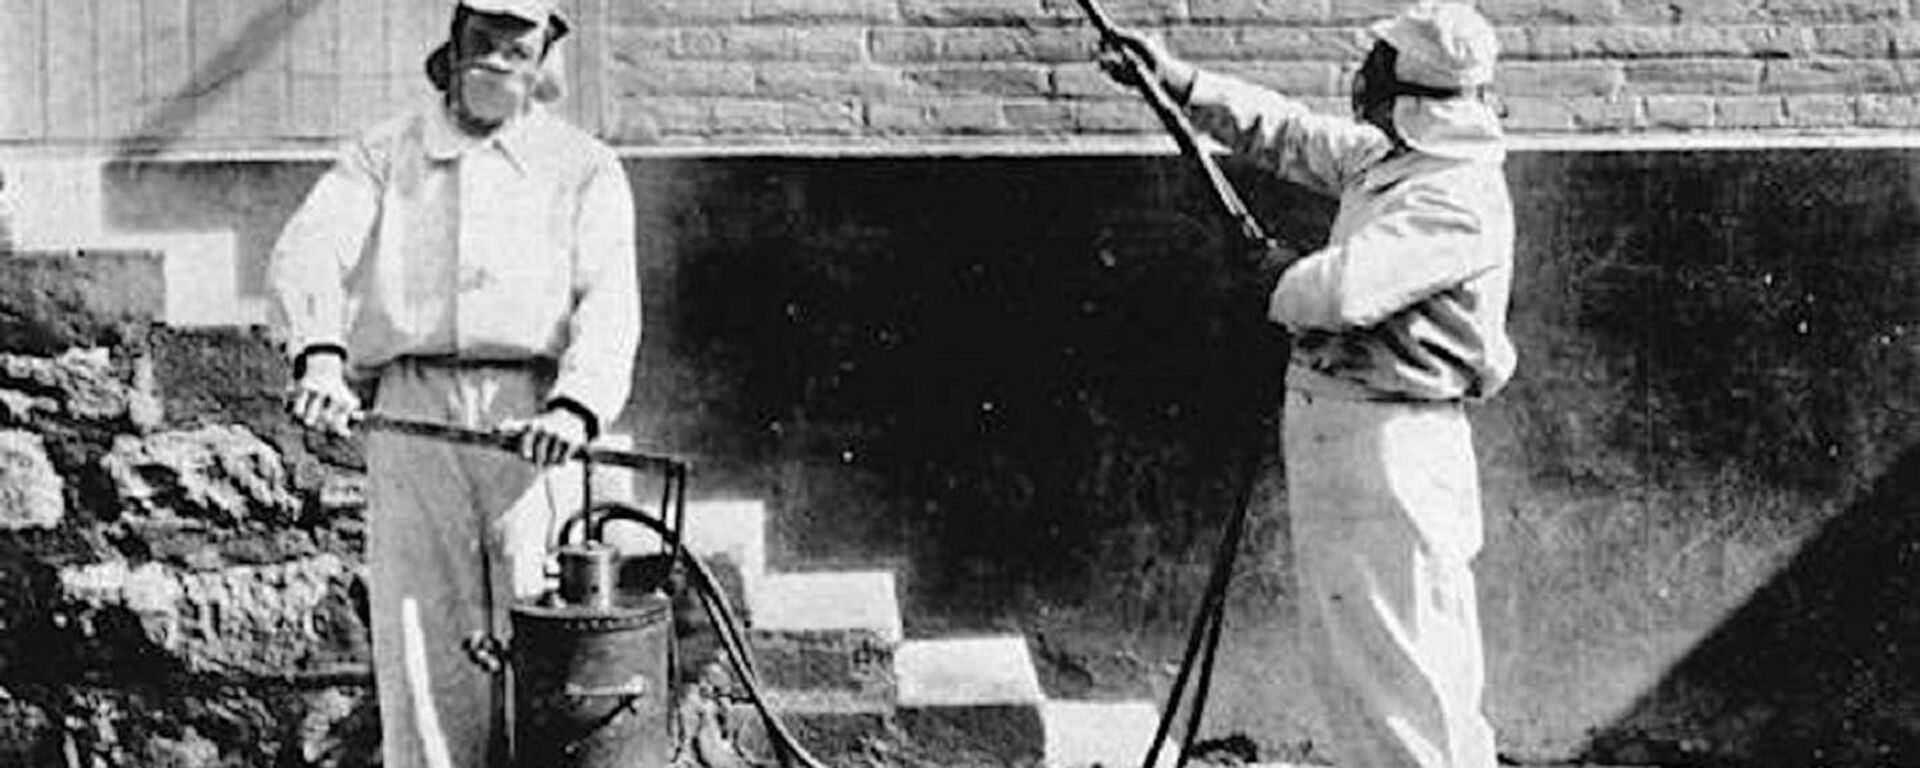 Desinfectadores trabajando, hacia 1910, en Chile - Sputnik Mundo, 1920, 06.04.2020